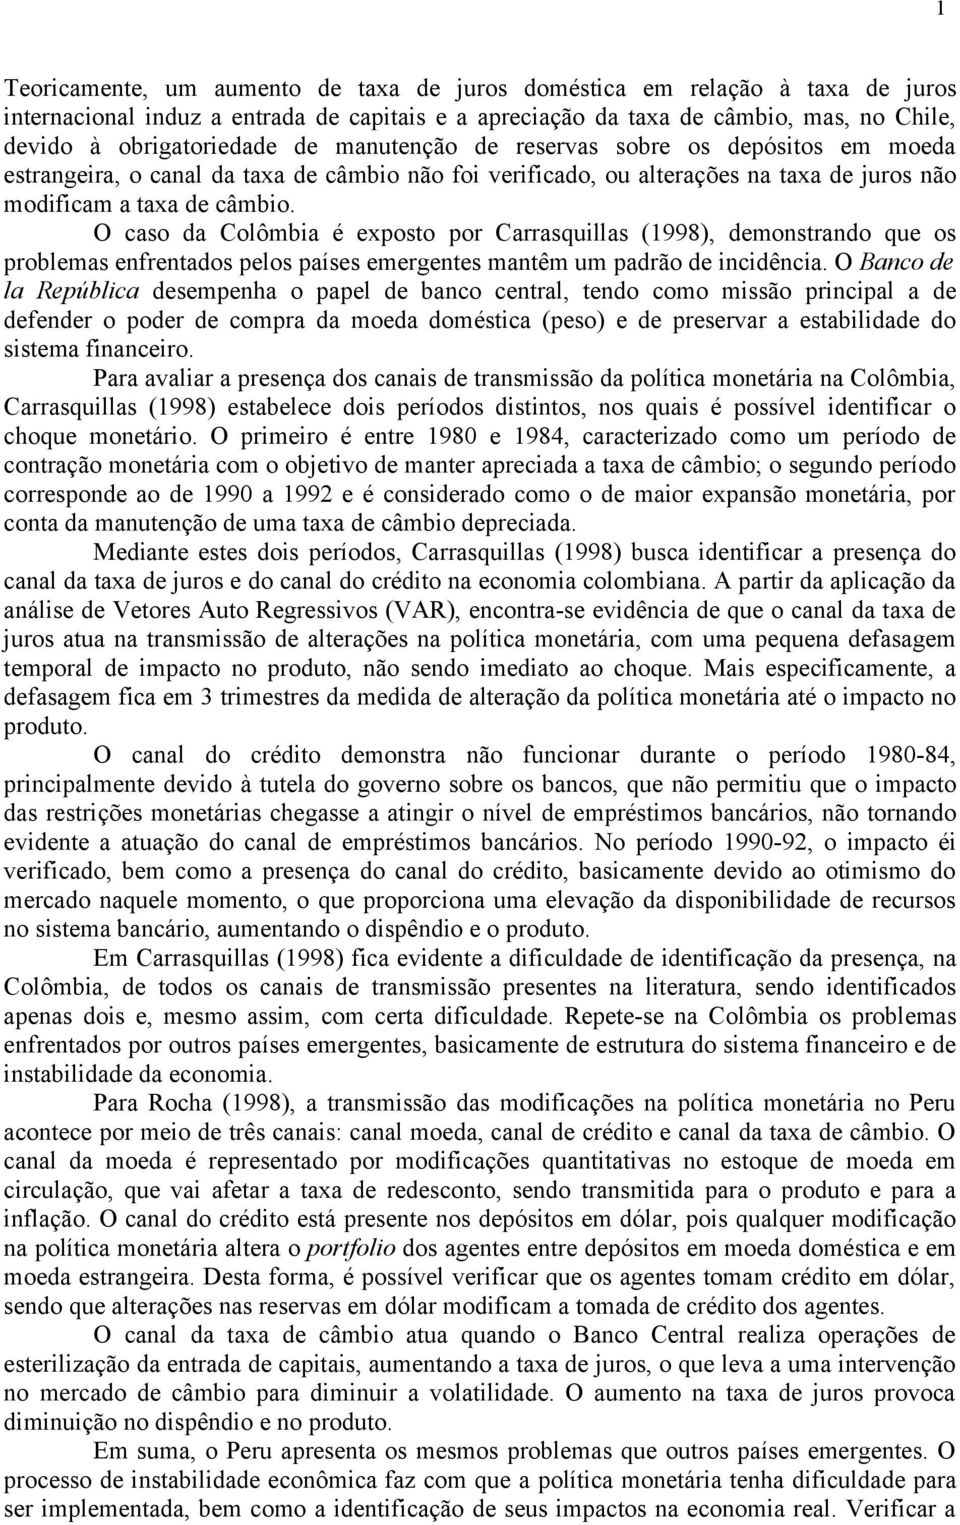 O caso da Colômbia é exposto por Carrasquillas (1998), demonstrando que os problemas enfrentados pelos países emergentes mantêm um padrão de incidência.